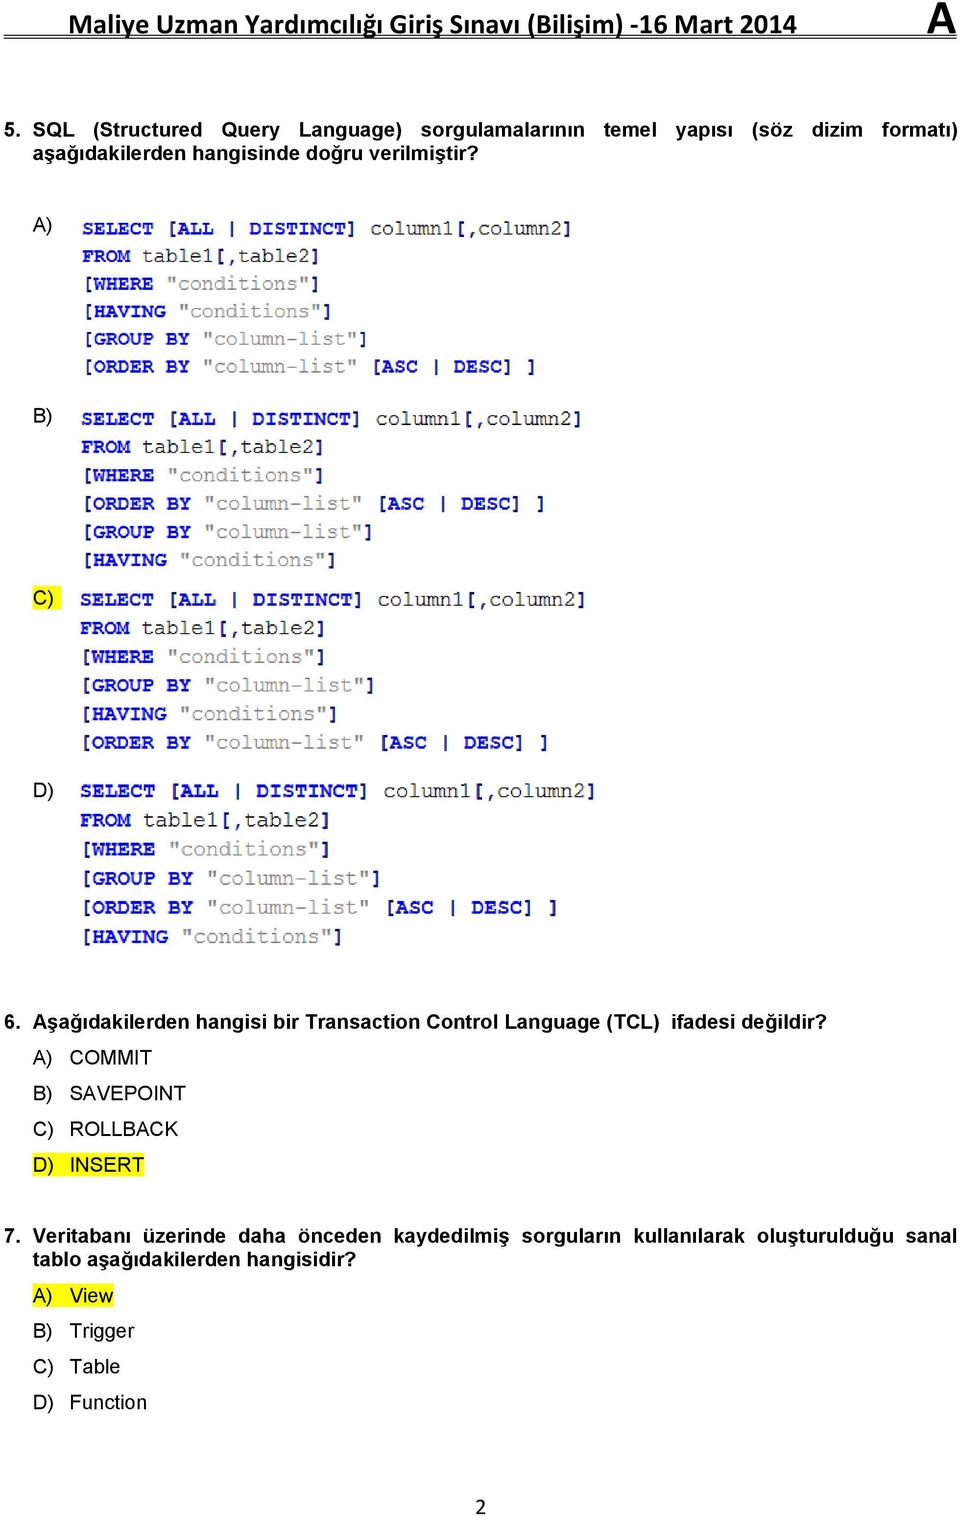 Aşağıdakilerden hangisi bir Transaction Control Language (TCL) ifadesi değildir?